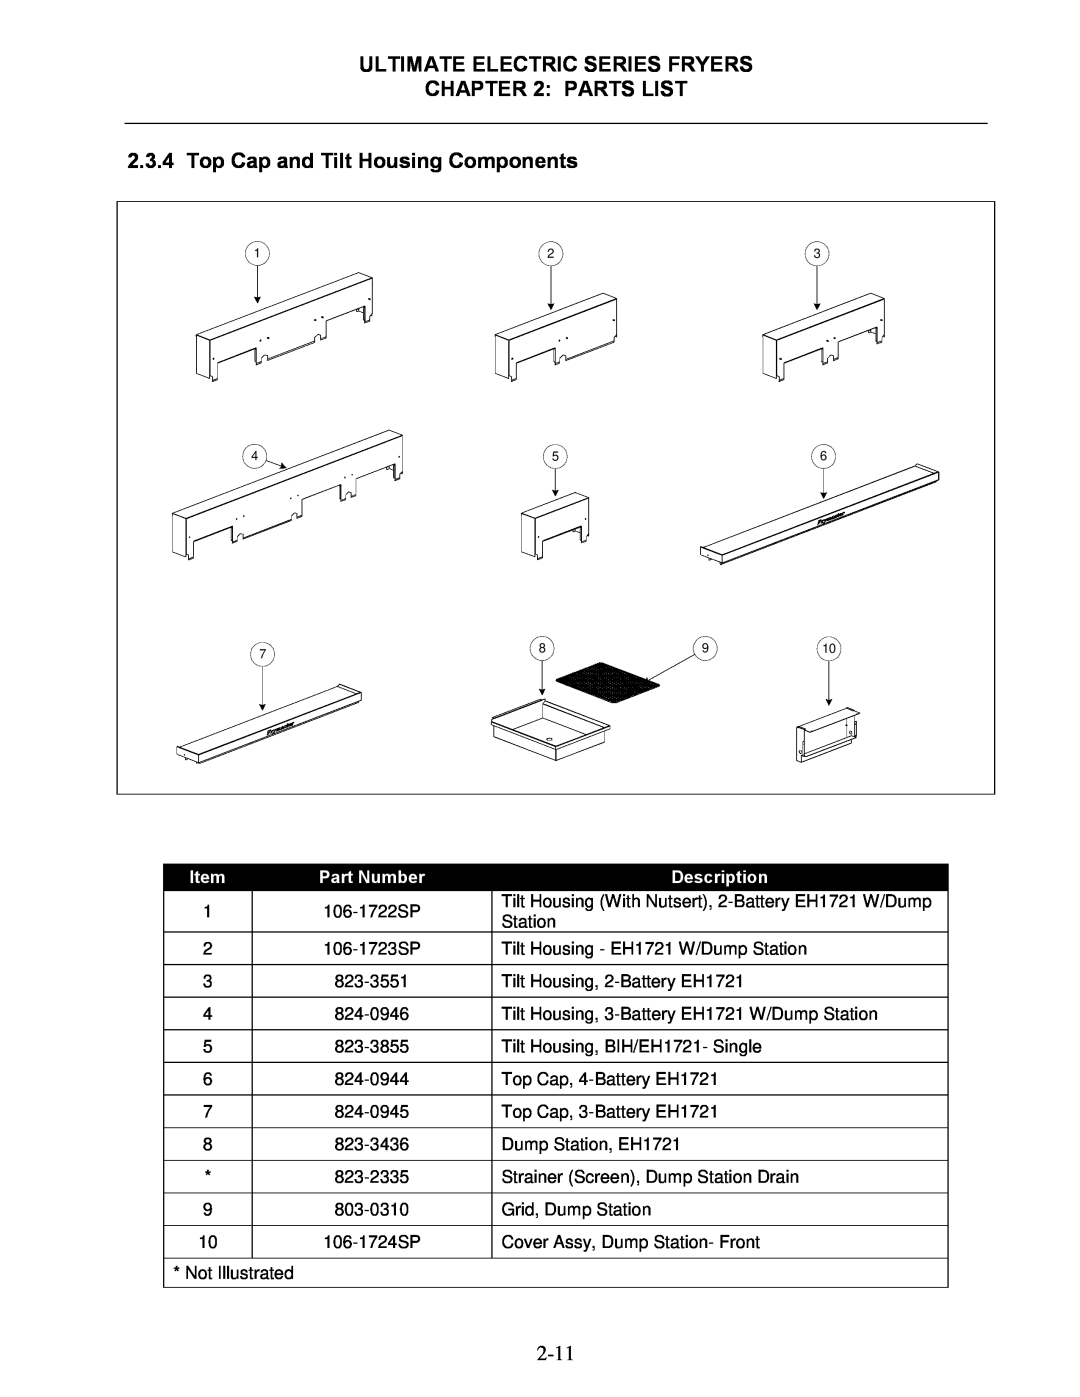 Frymaster Top Cap and Tilt Housing Components, Ultimate Electric Series Fryers, Parts List, Part Number, Description 